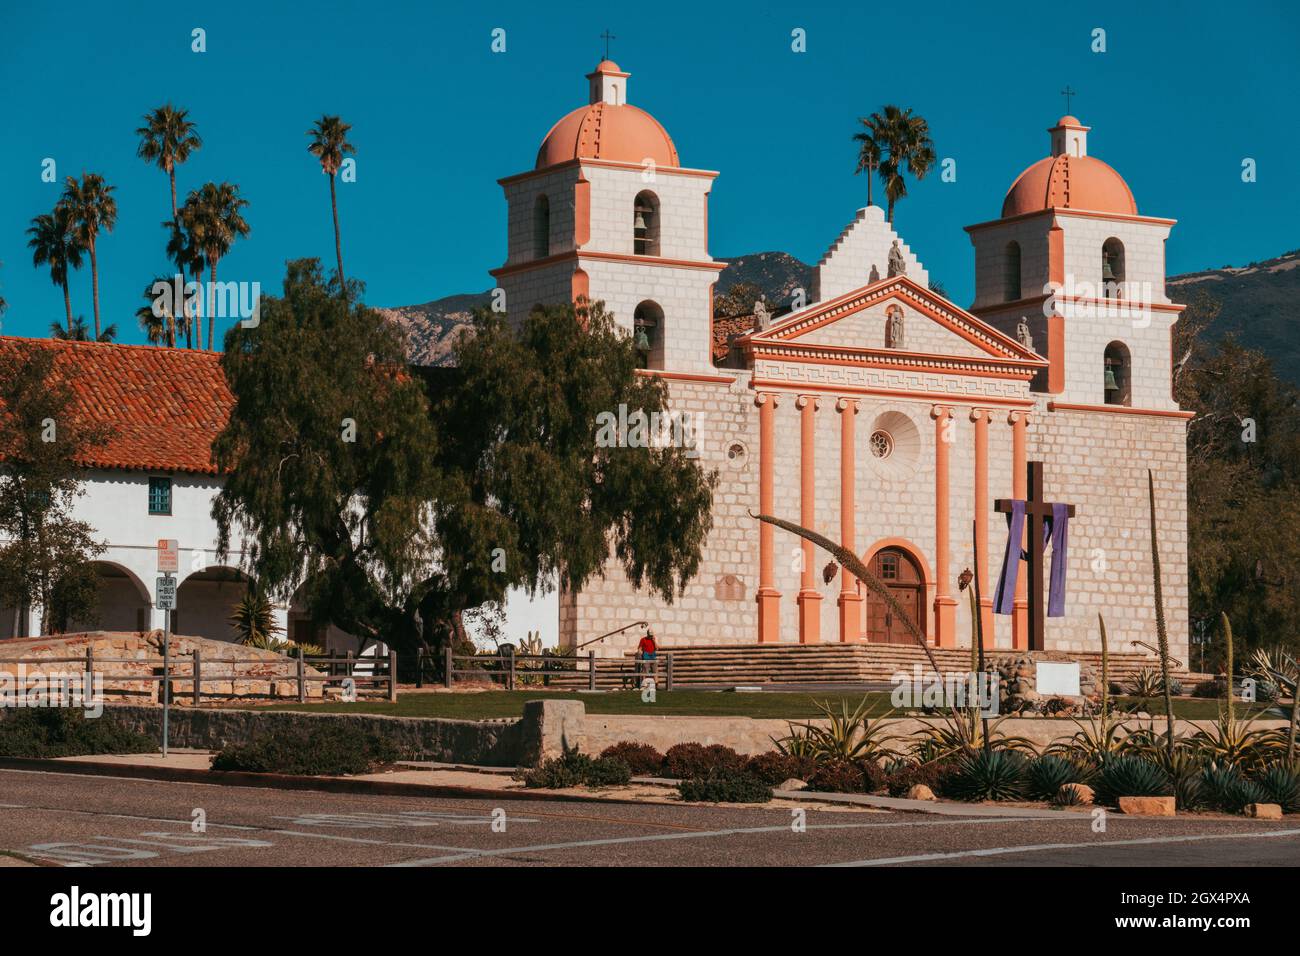 La vieille Mission Santa Barbara, Californie.Fondée en 1786 par les Espagnols pour la conversion religieuse des peuples autochtones au catholicisme Banque D'Images